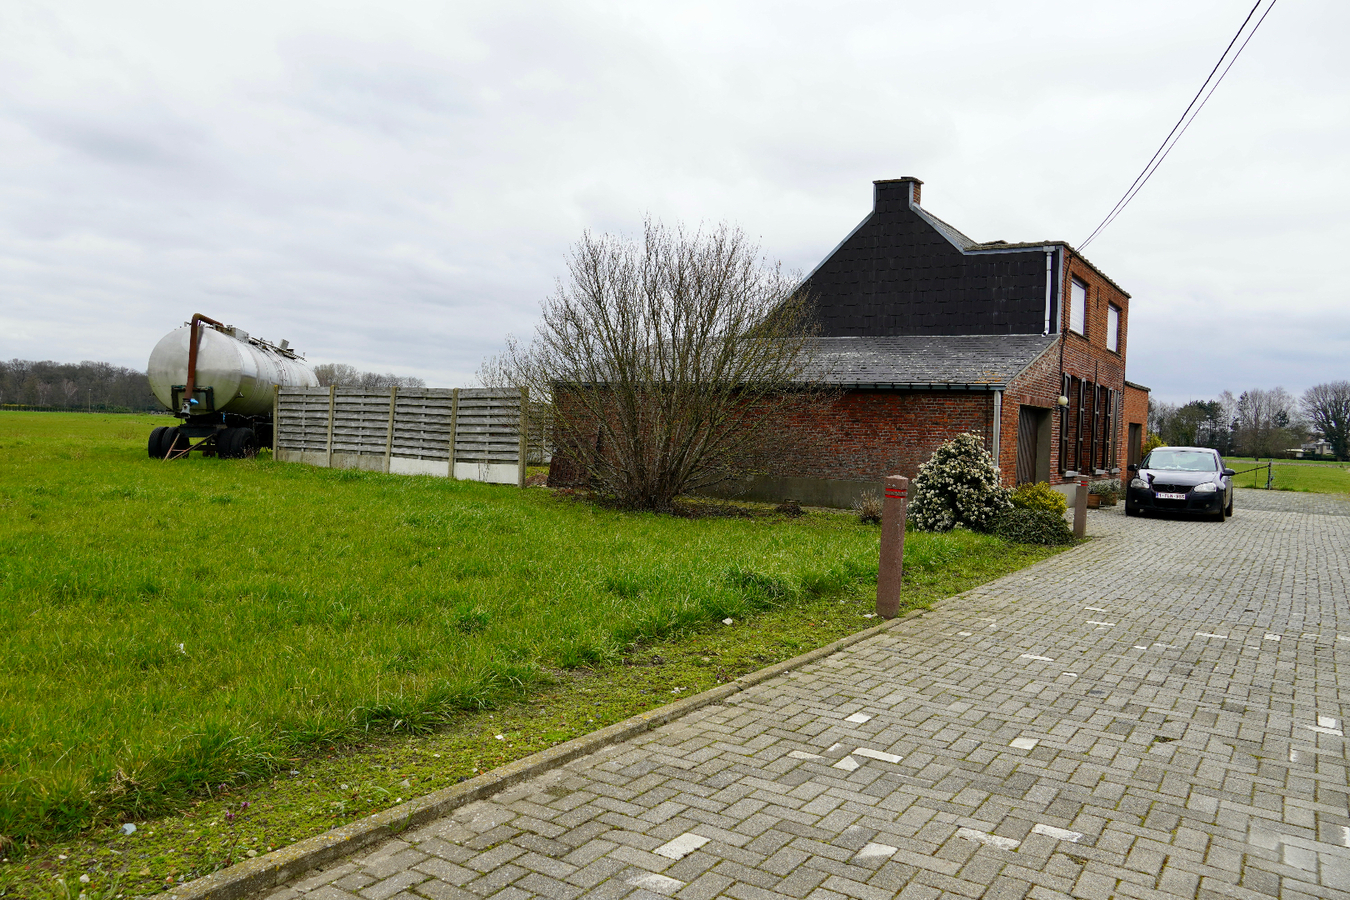 Property sold in Koningshooikt